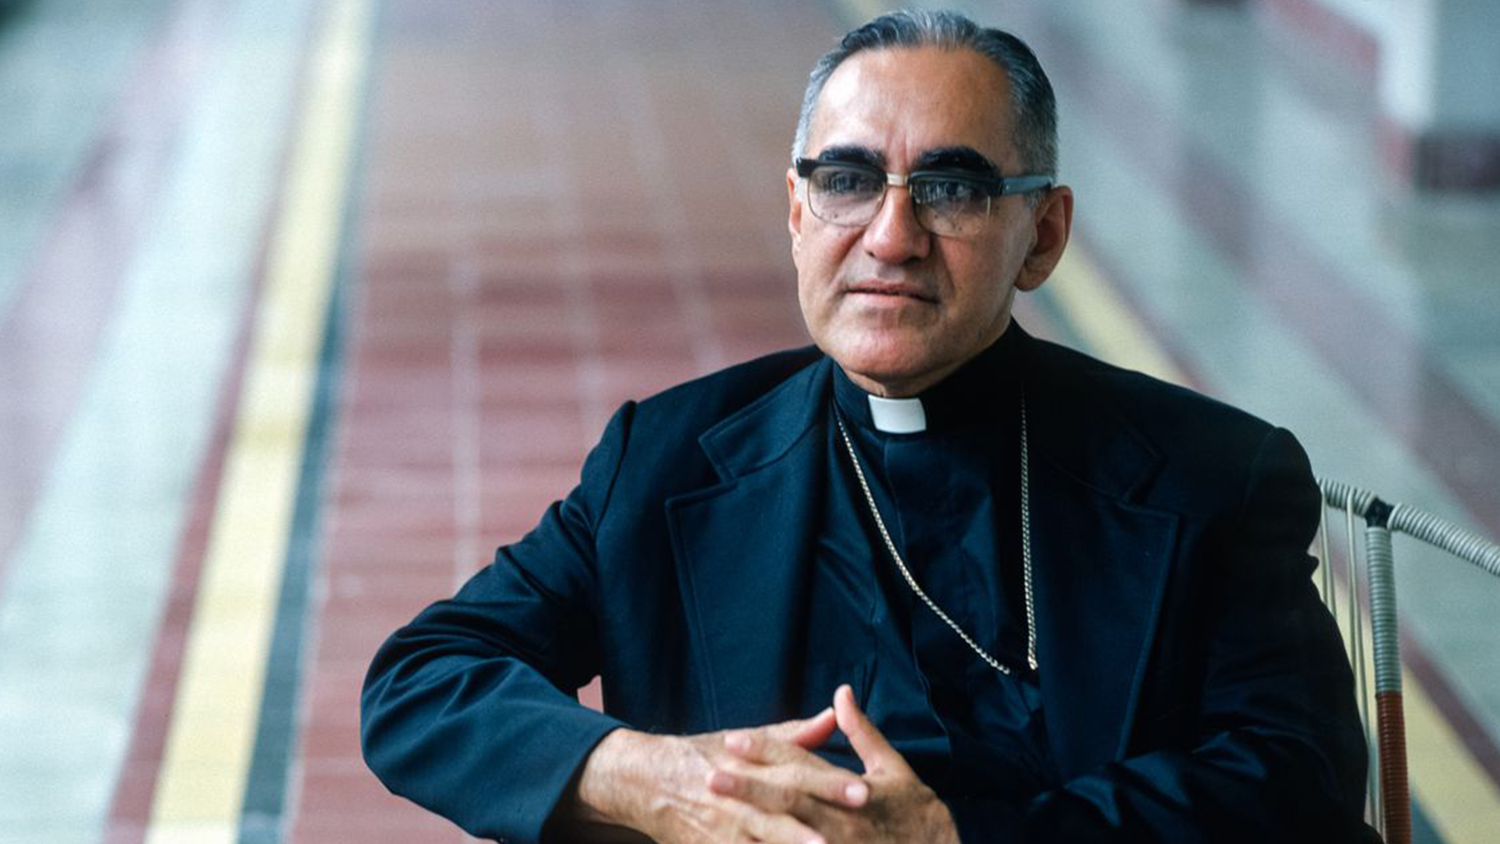 Revista De Vacaciones El Salvador Iglesia conmemora 40 años de la muerte de  San Romero - Revista De Vacaciones El Salvador